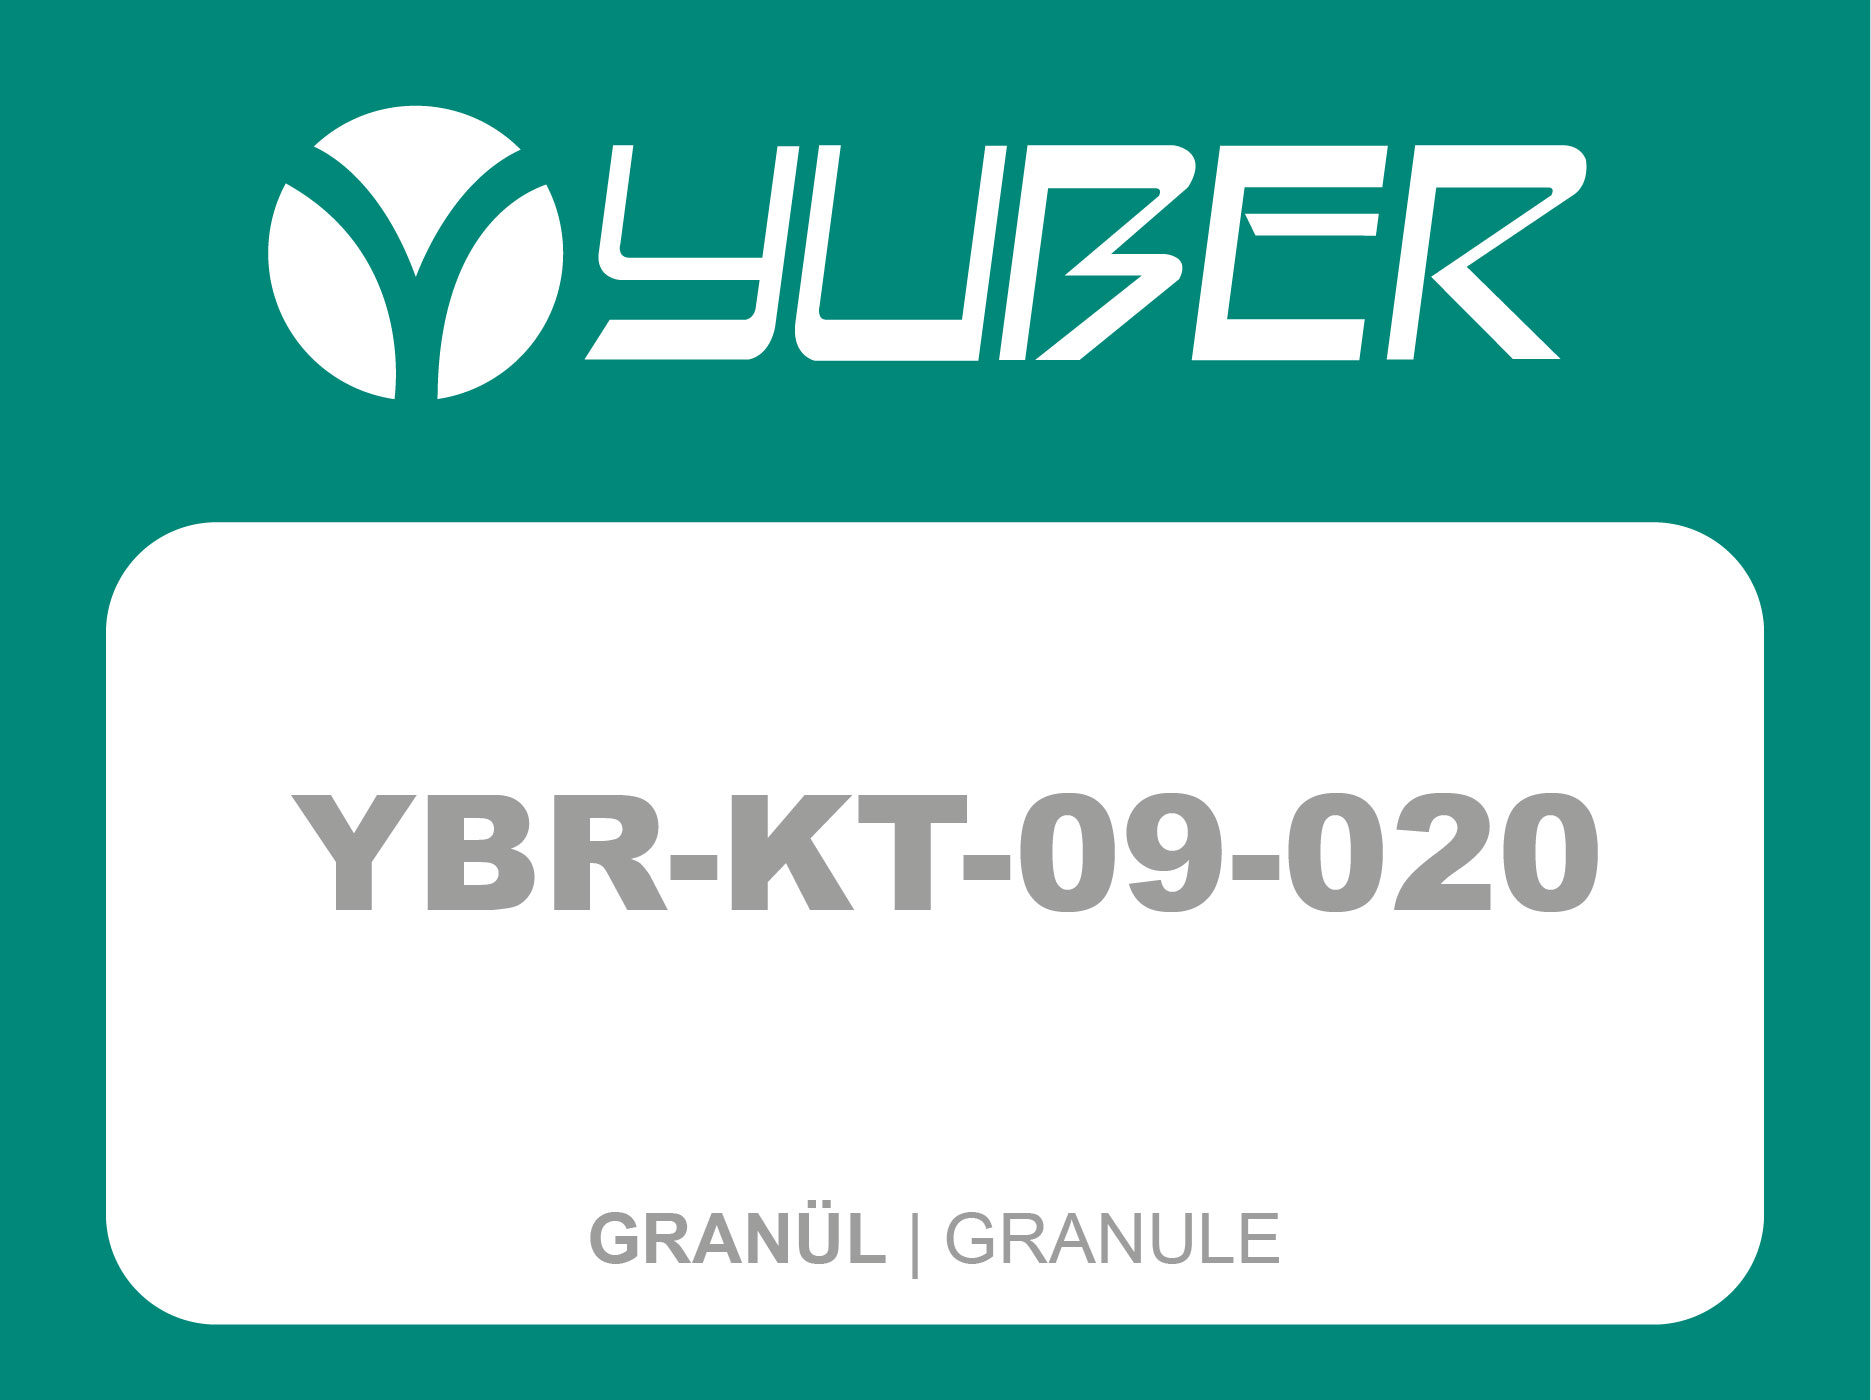 YBR KT 09 020 Granül Yuber Metalurji